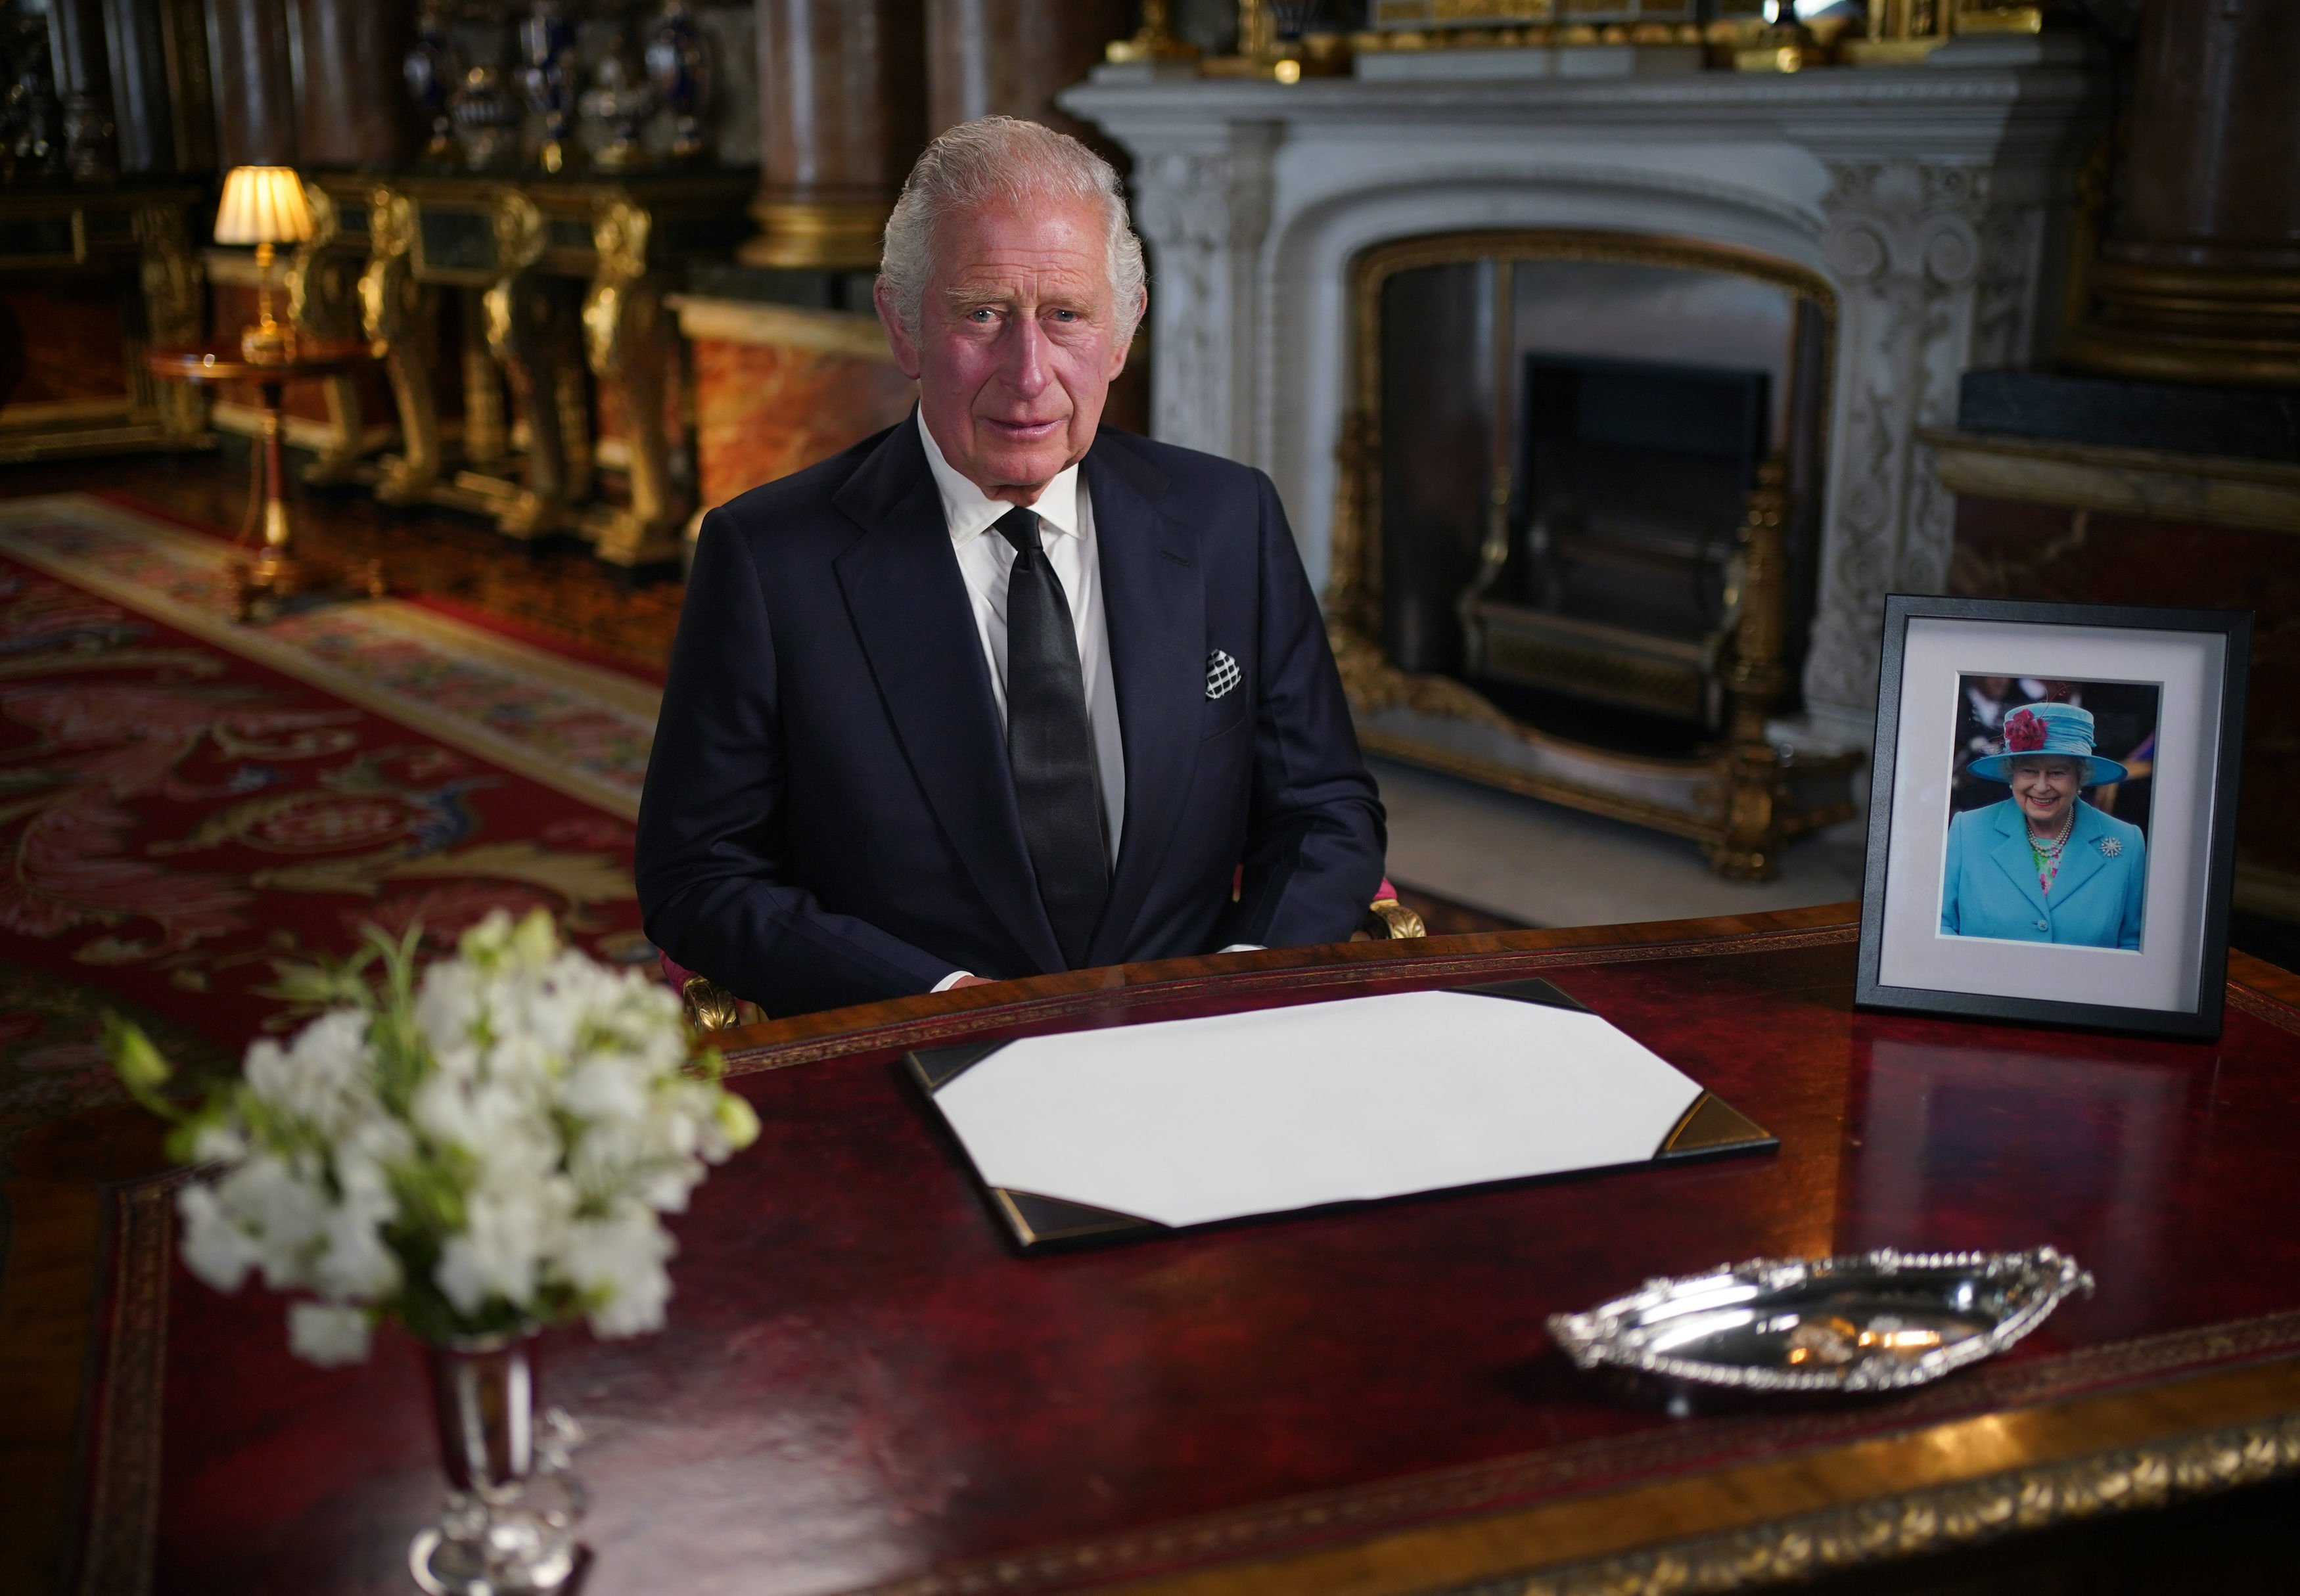 El rey Charles III pronuncia su discurso a la nación y la Commonwealth desde el Palacio de Buckingham tras la muerte de la reina Elizabeth II, el 9 de septiembre de 2022 en Londres, Inglaterra. | Foto: Getty Images